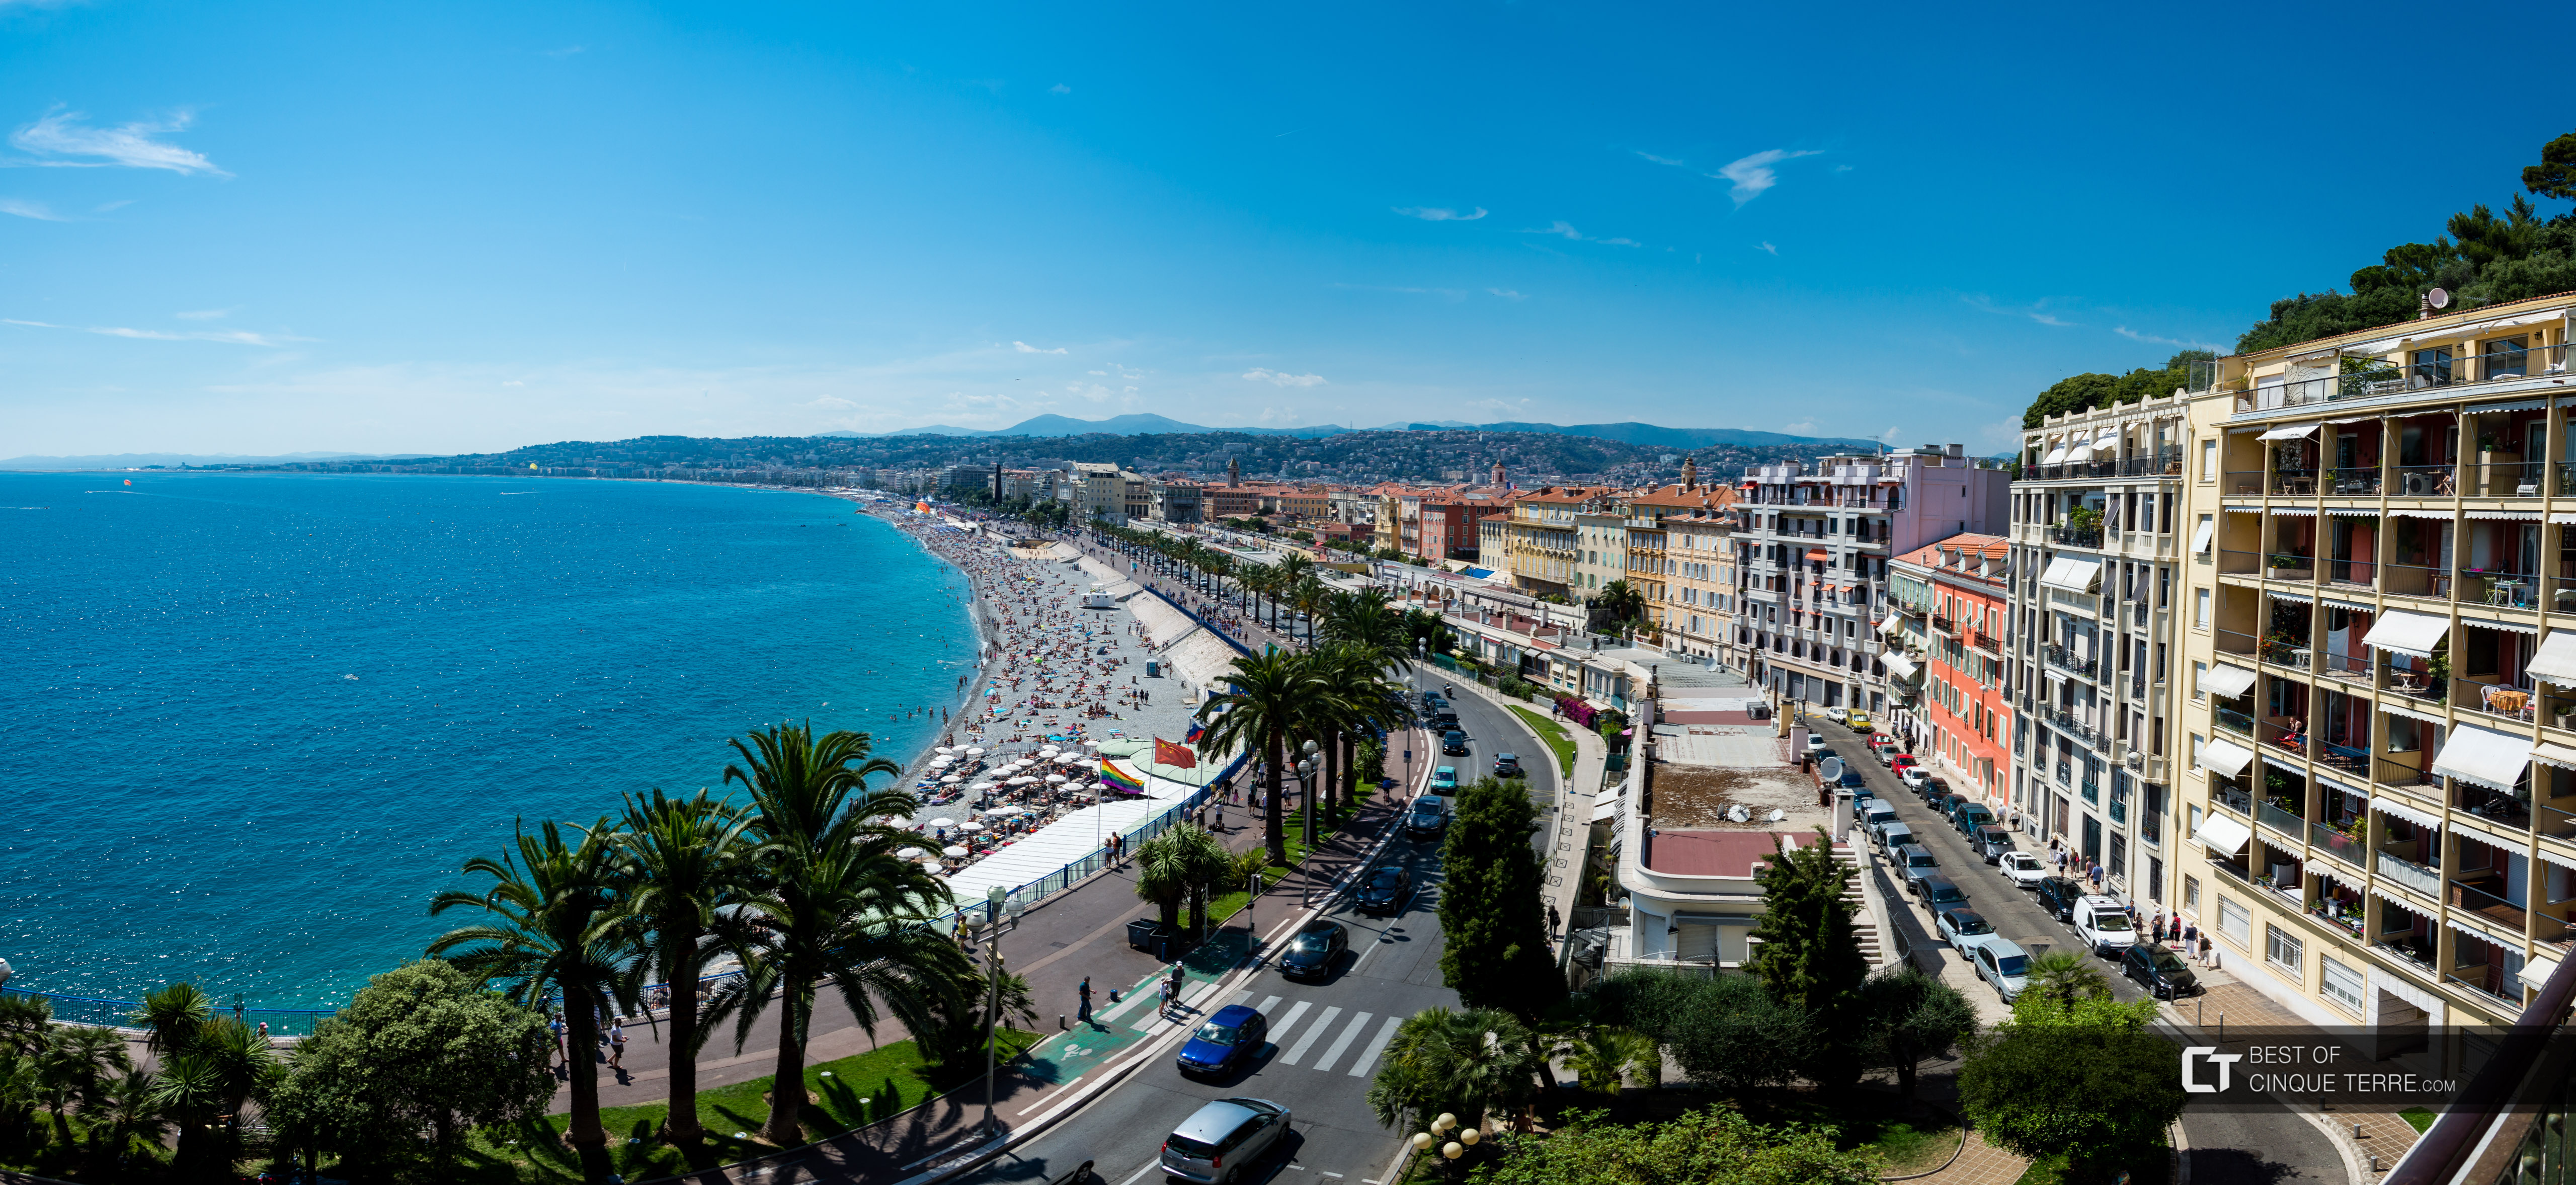 Promenade des Anglais dal punto panoramico della Collina del Castello, Nizza, Francia